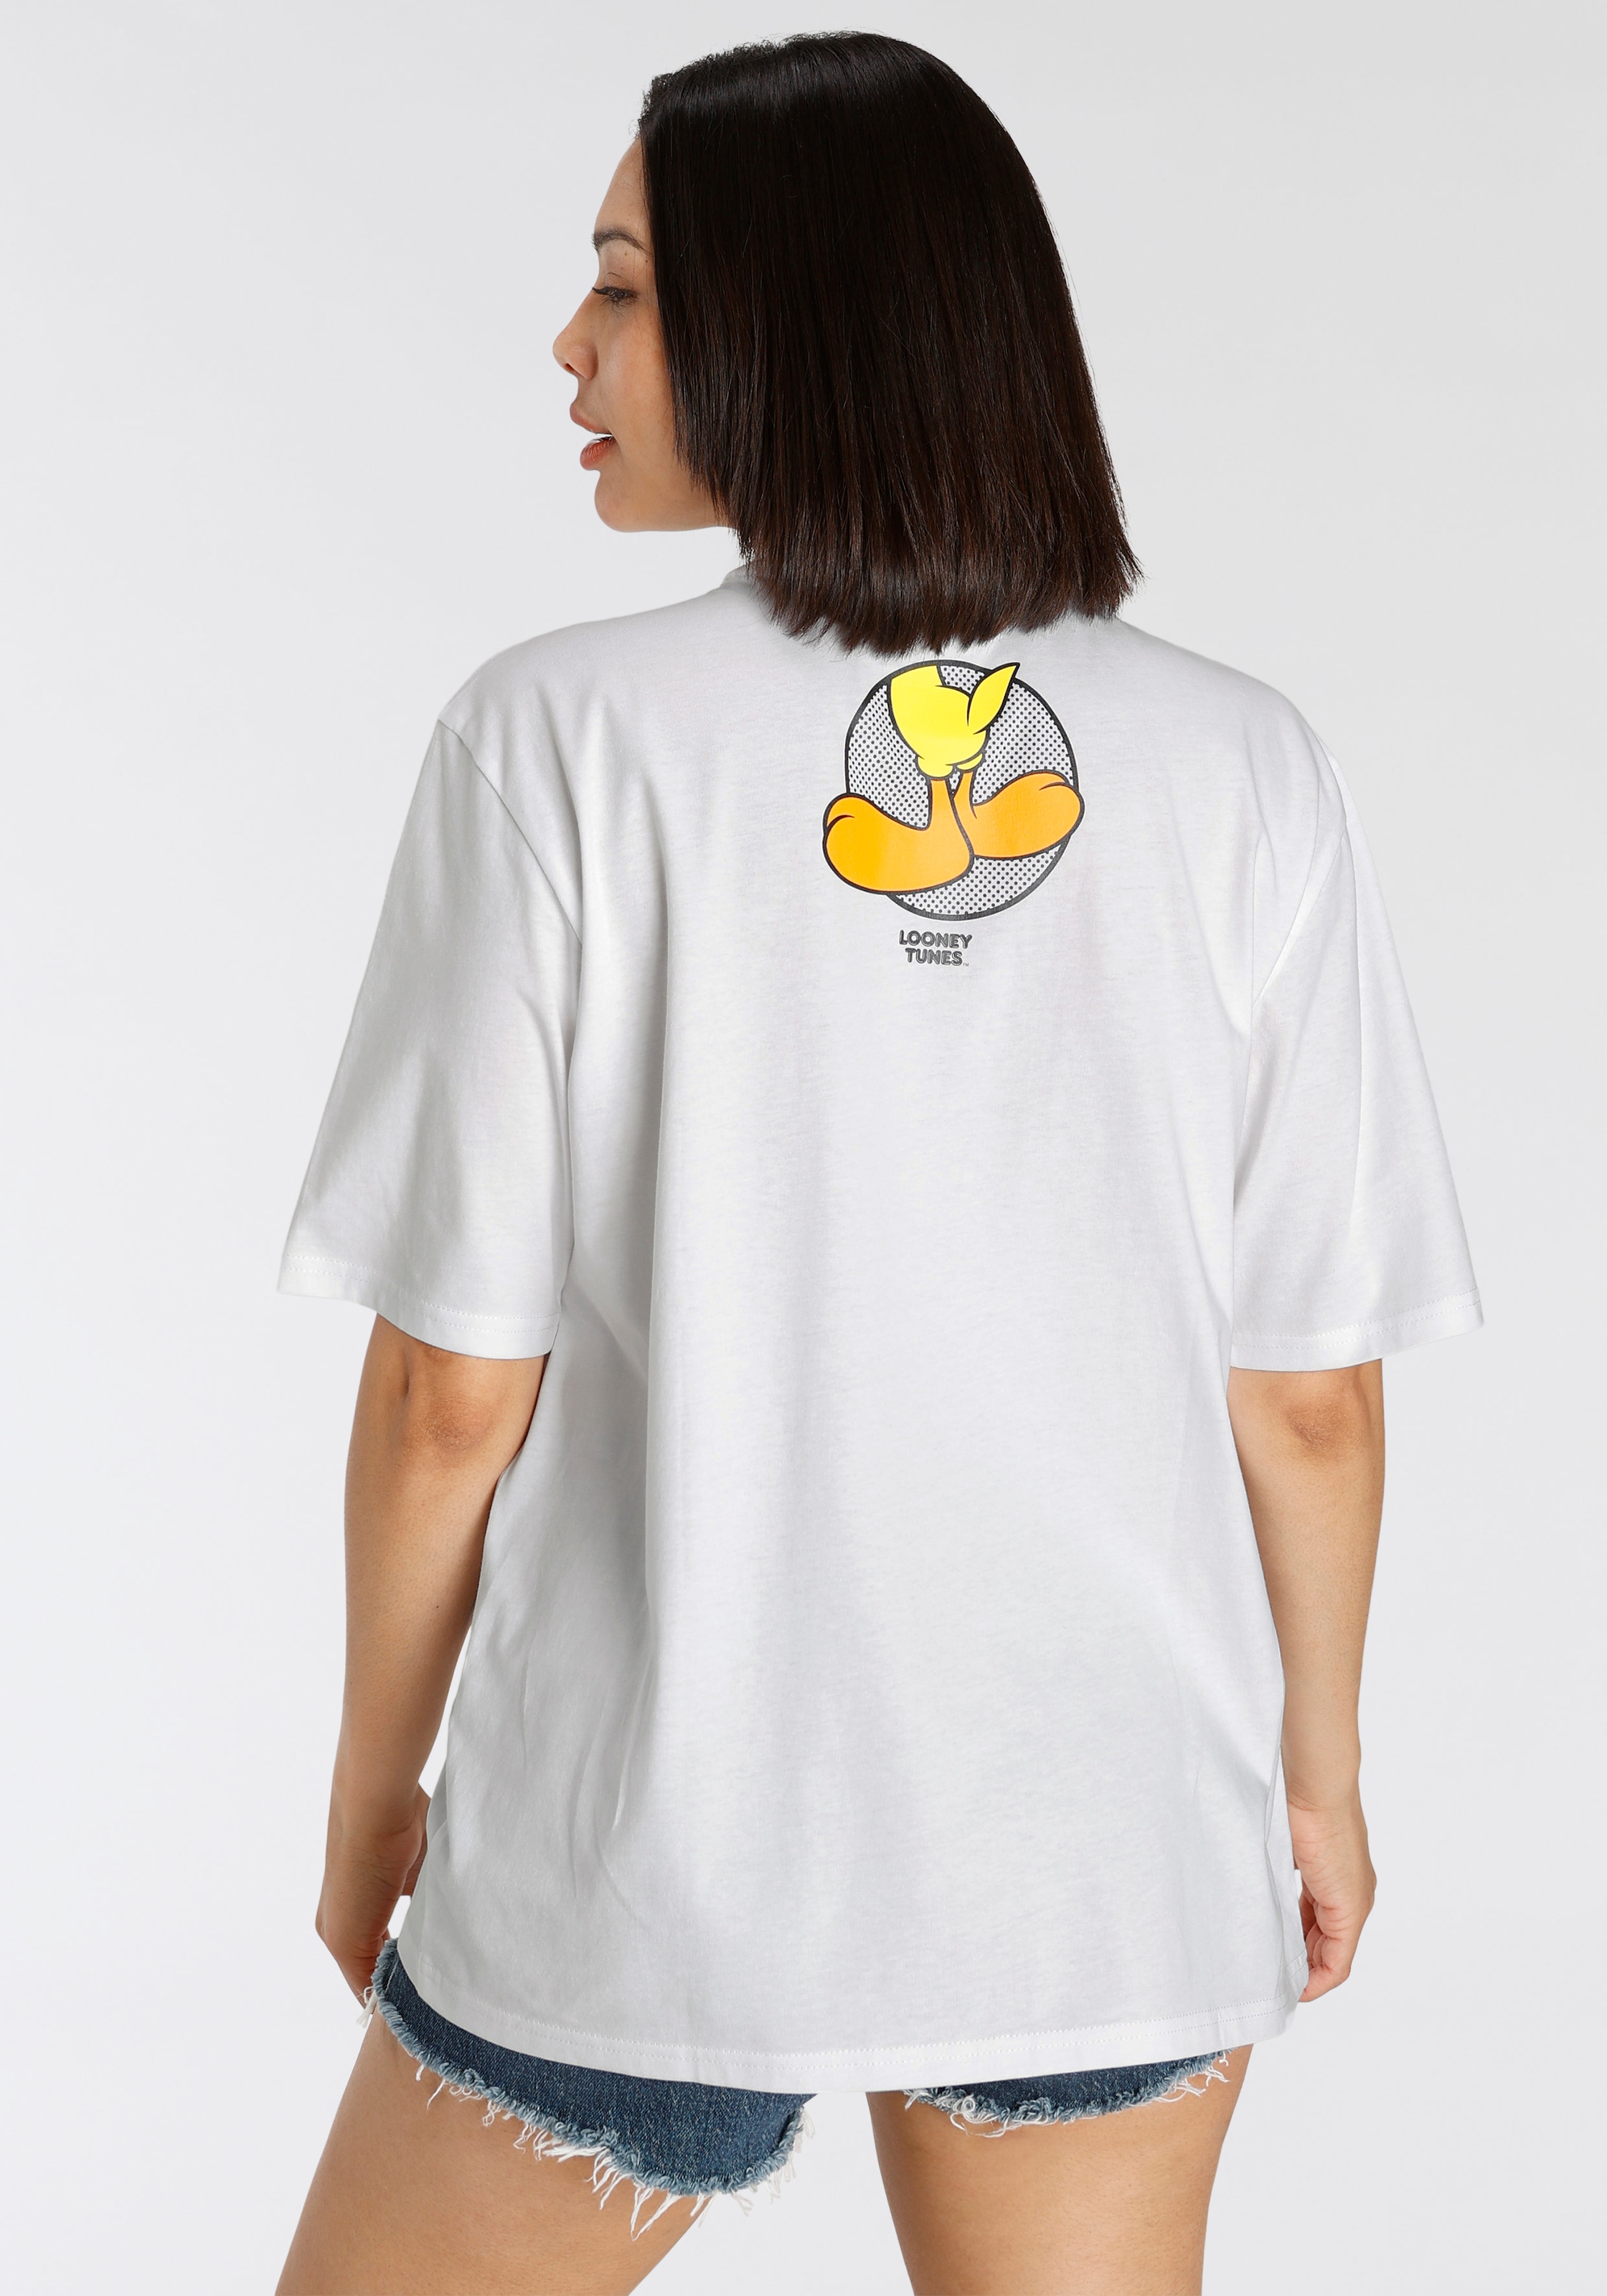 New bei kaufen Jelmoli-Versand York online T-Shirt, Tweety T-Shirt Capelli Schweiz